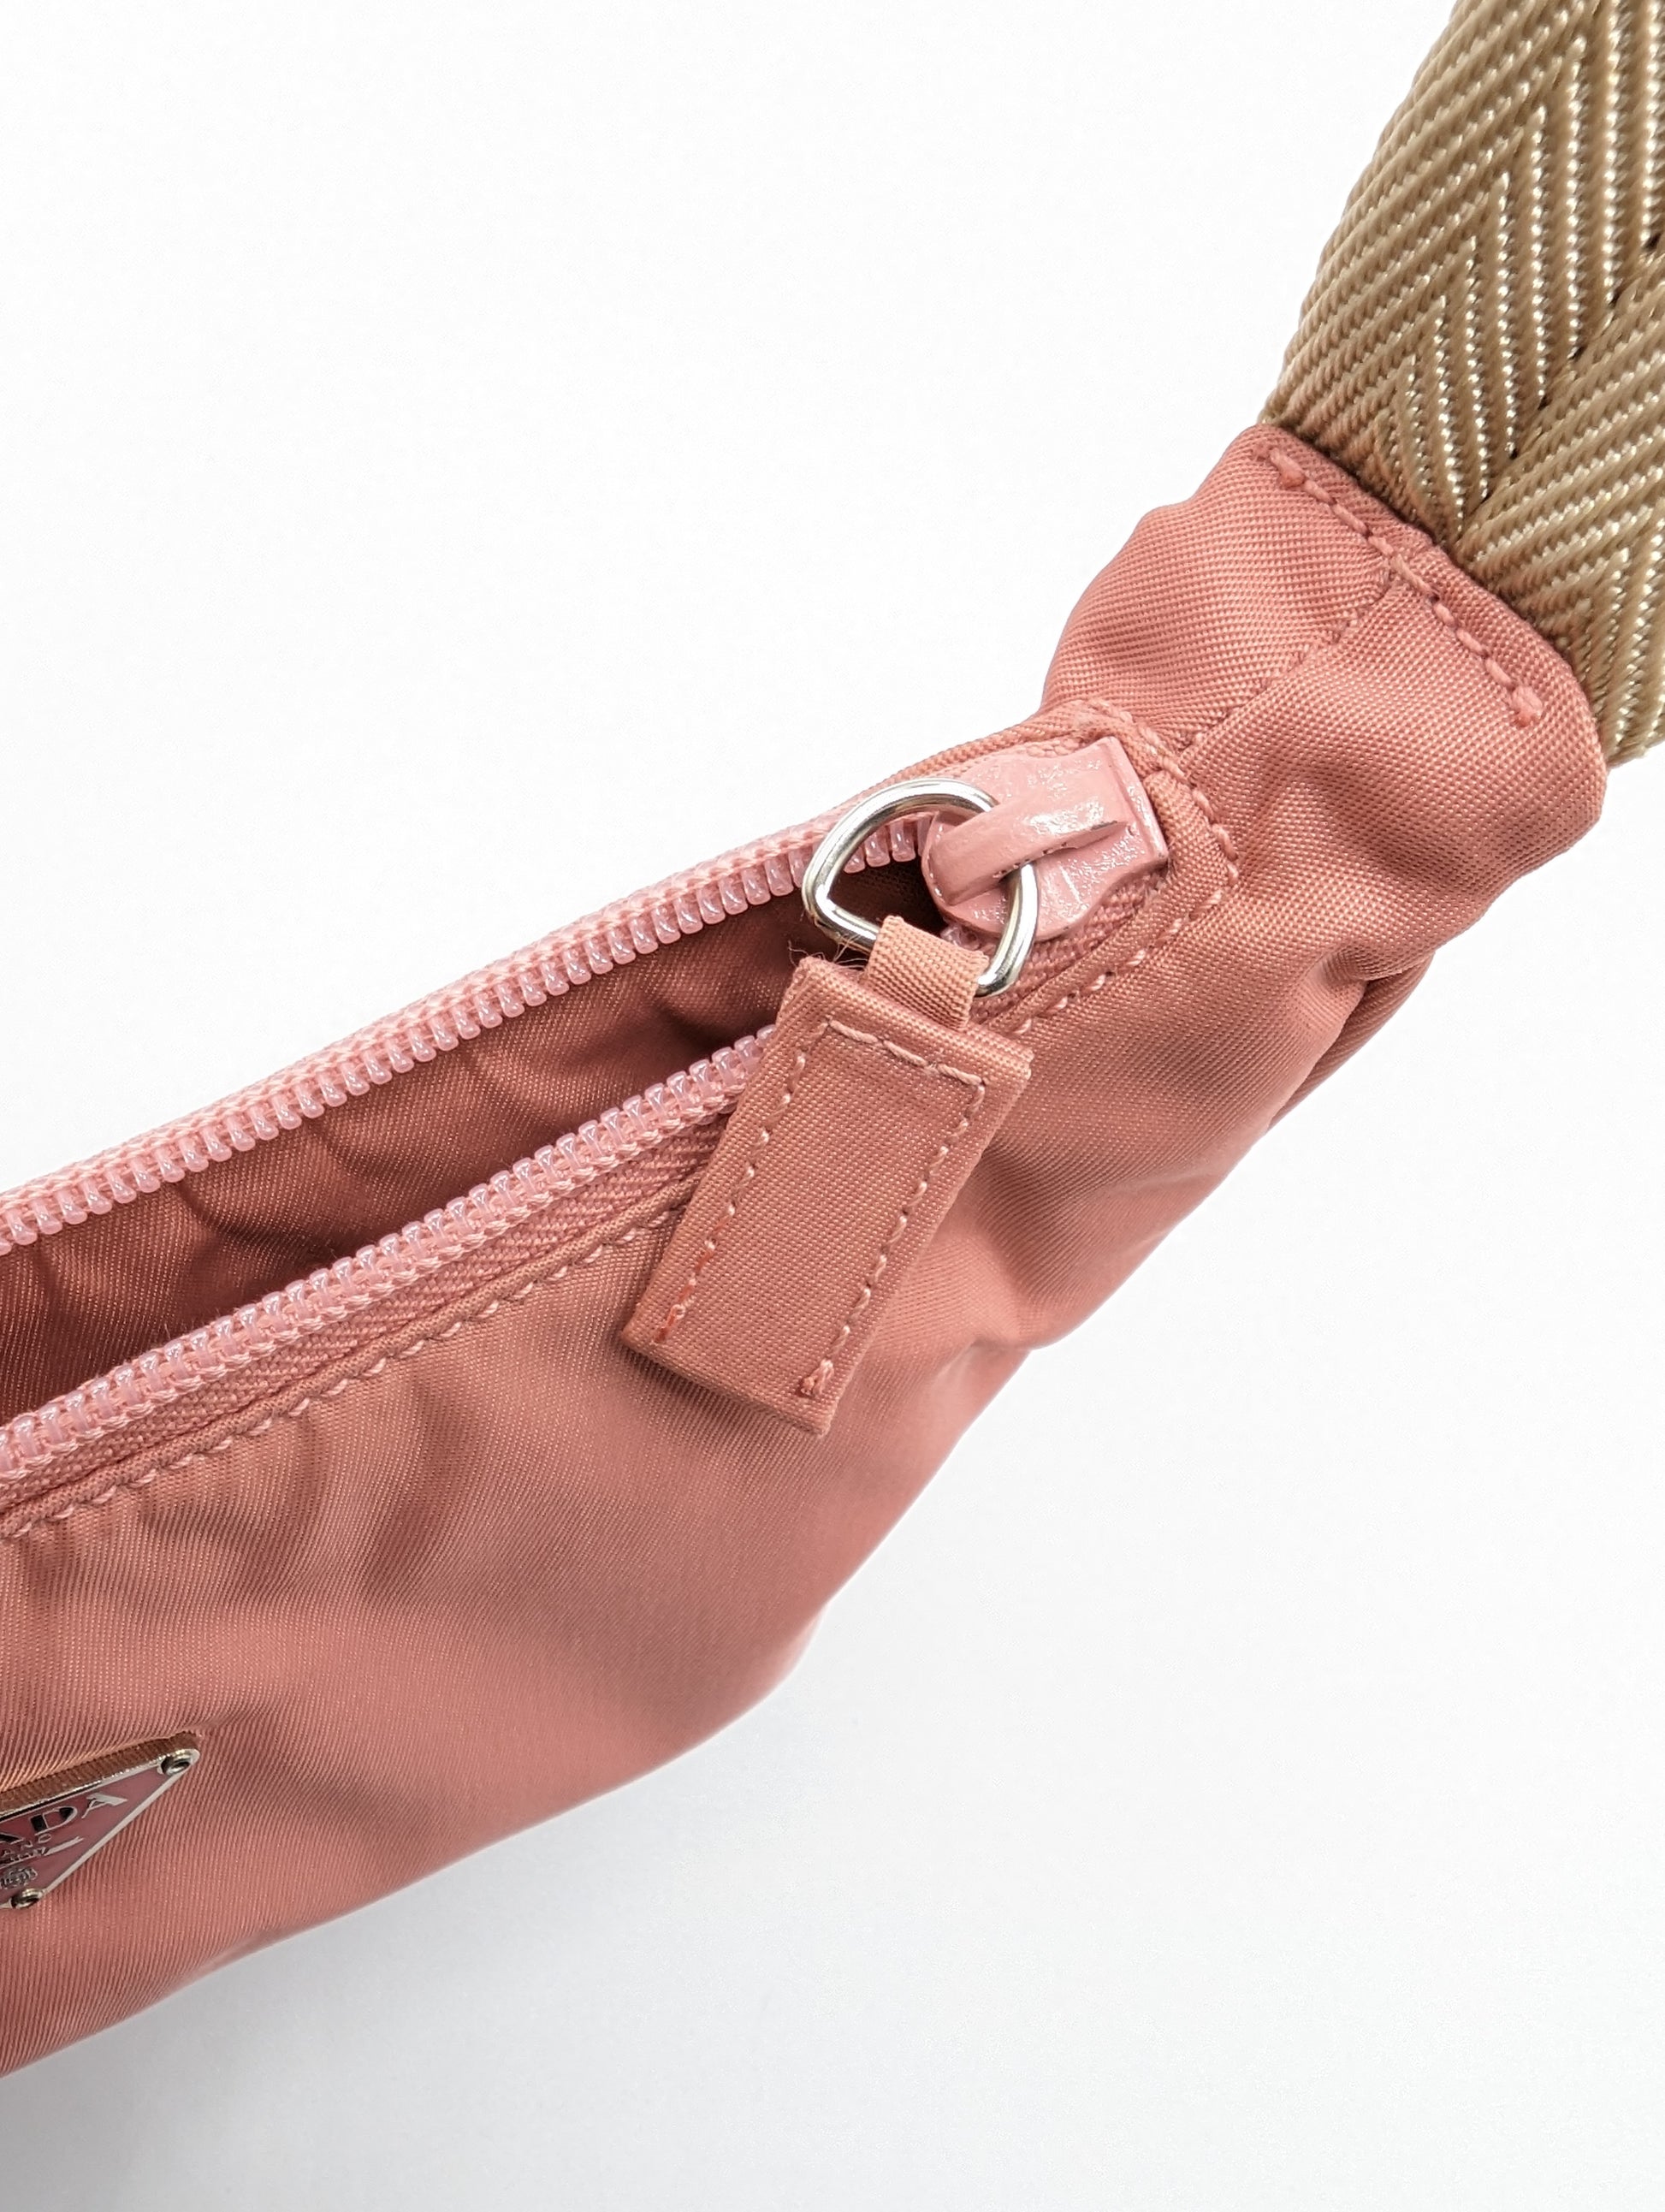 PRADA-Logo-Nylon-Leather-Shoulder-Bag-Hand-Bag-Pink-BR4894